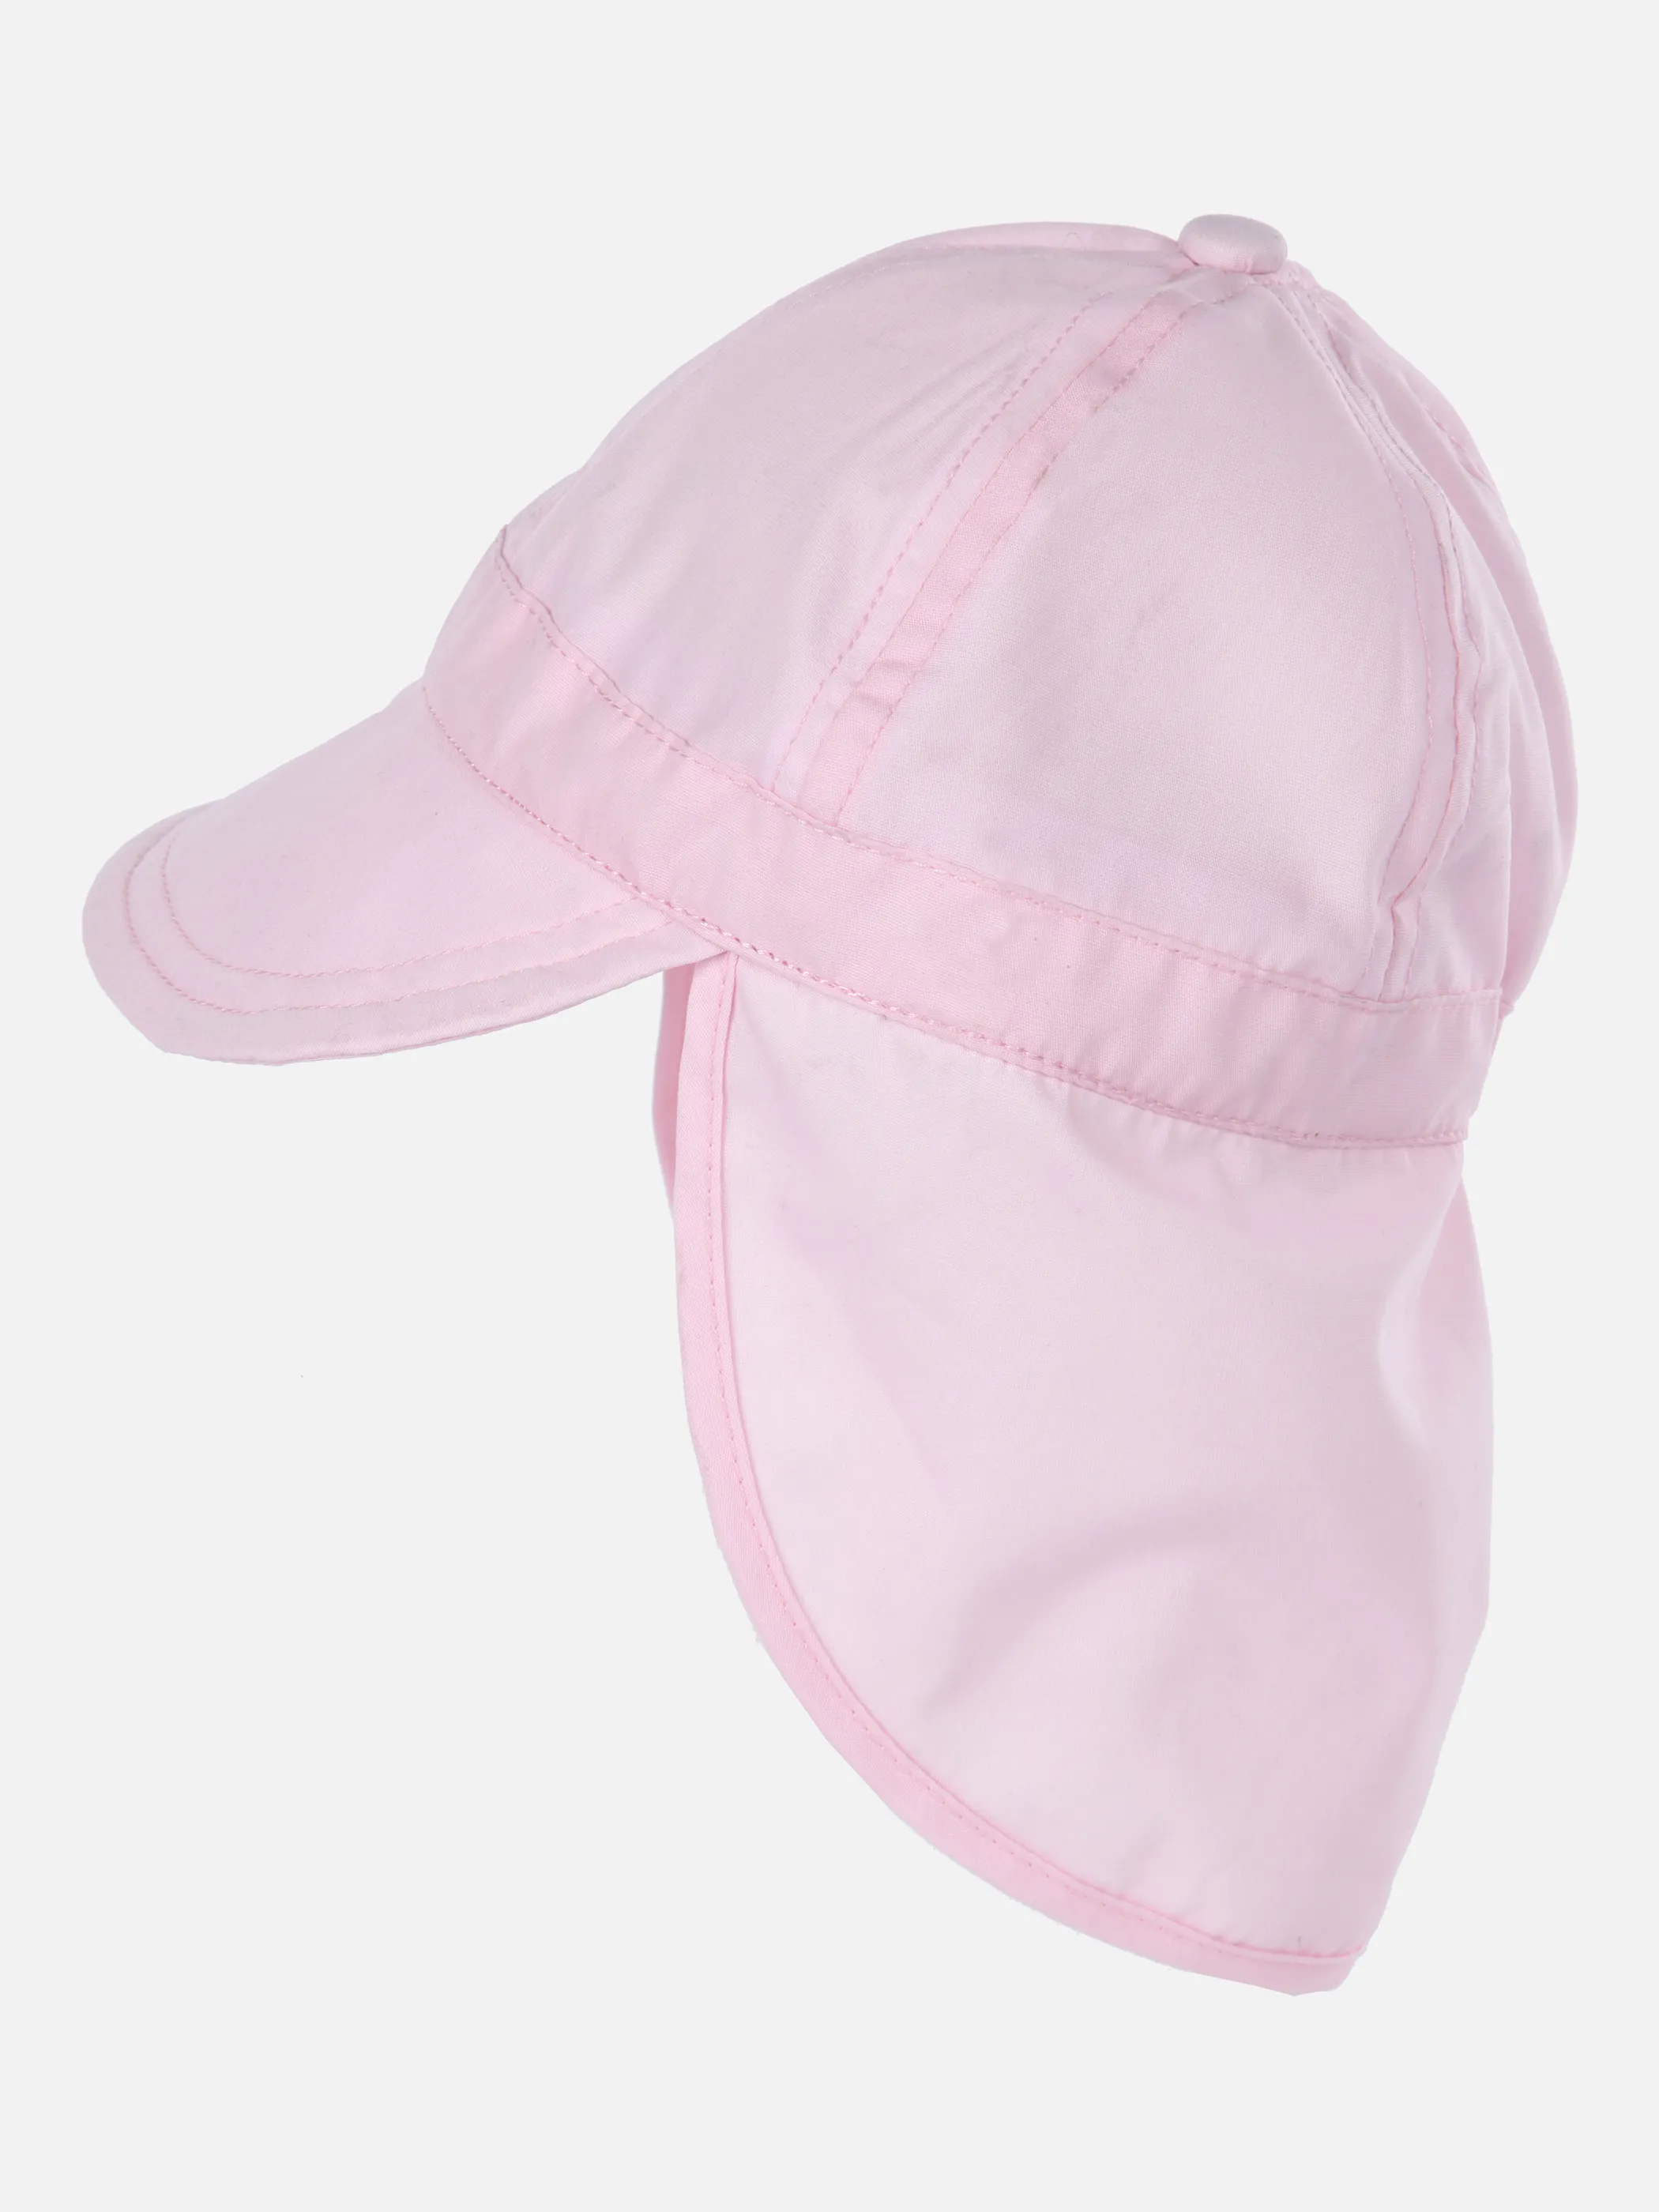 Bubble Gum BG Mütze mit Nackenschutz in Rosa 851545 ROSA 2